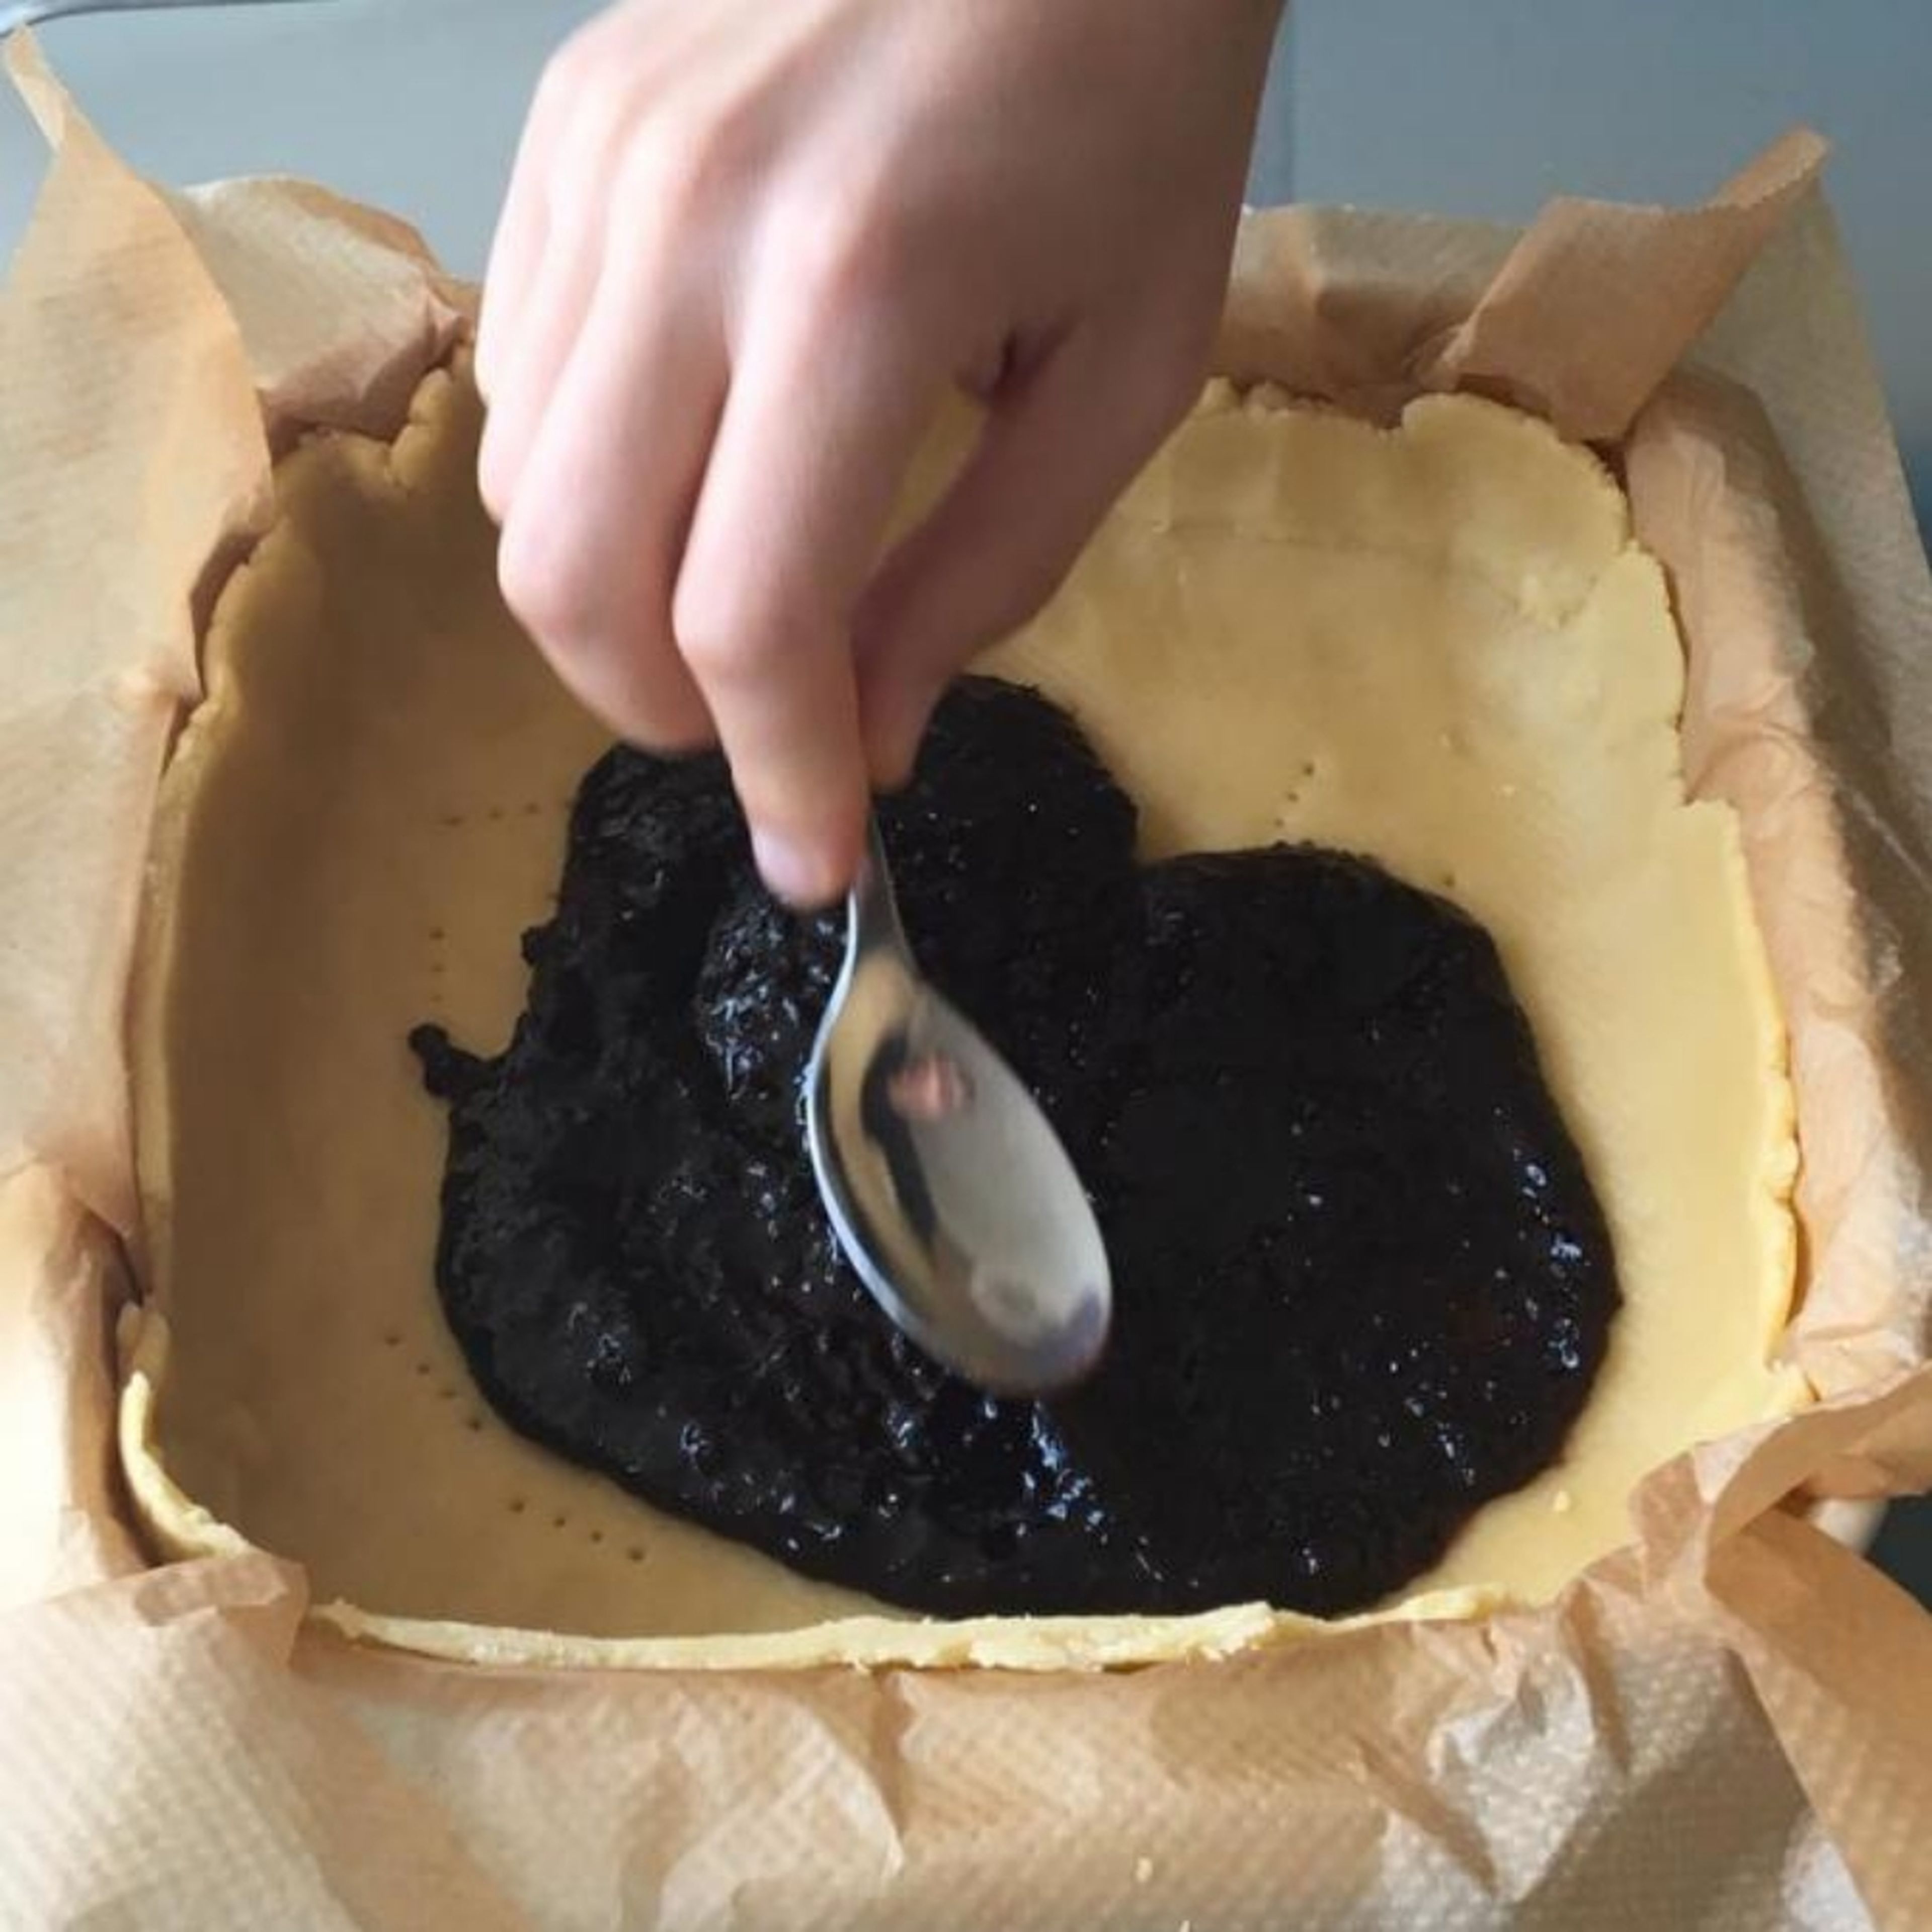 Spread uniformly the jam on the dough.